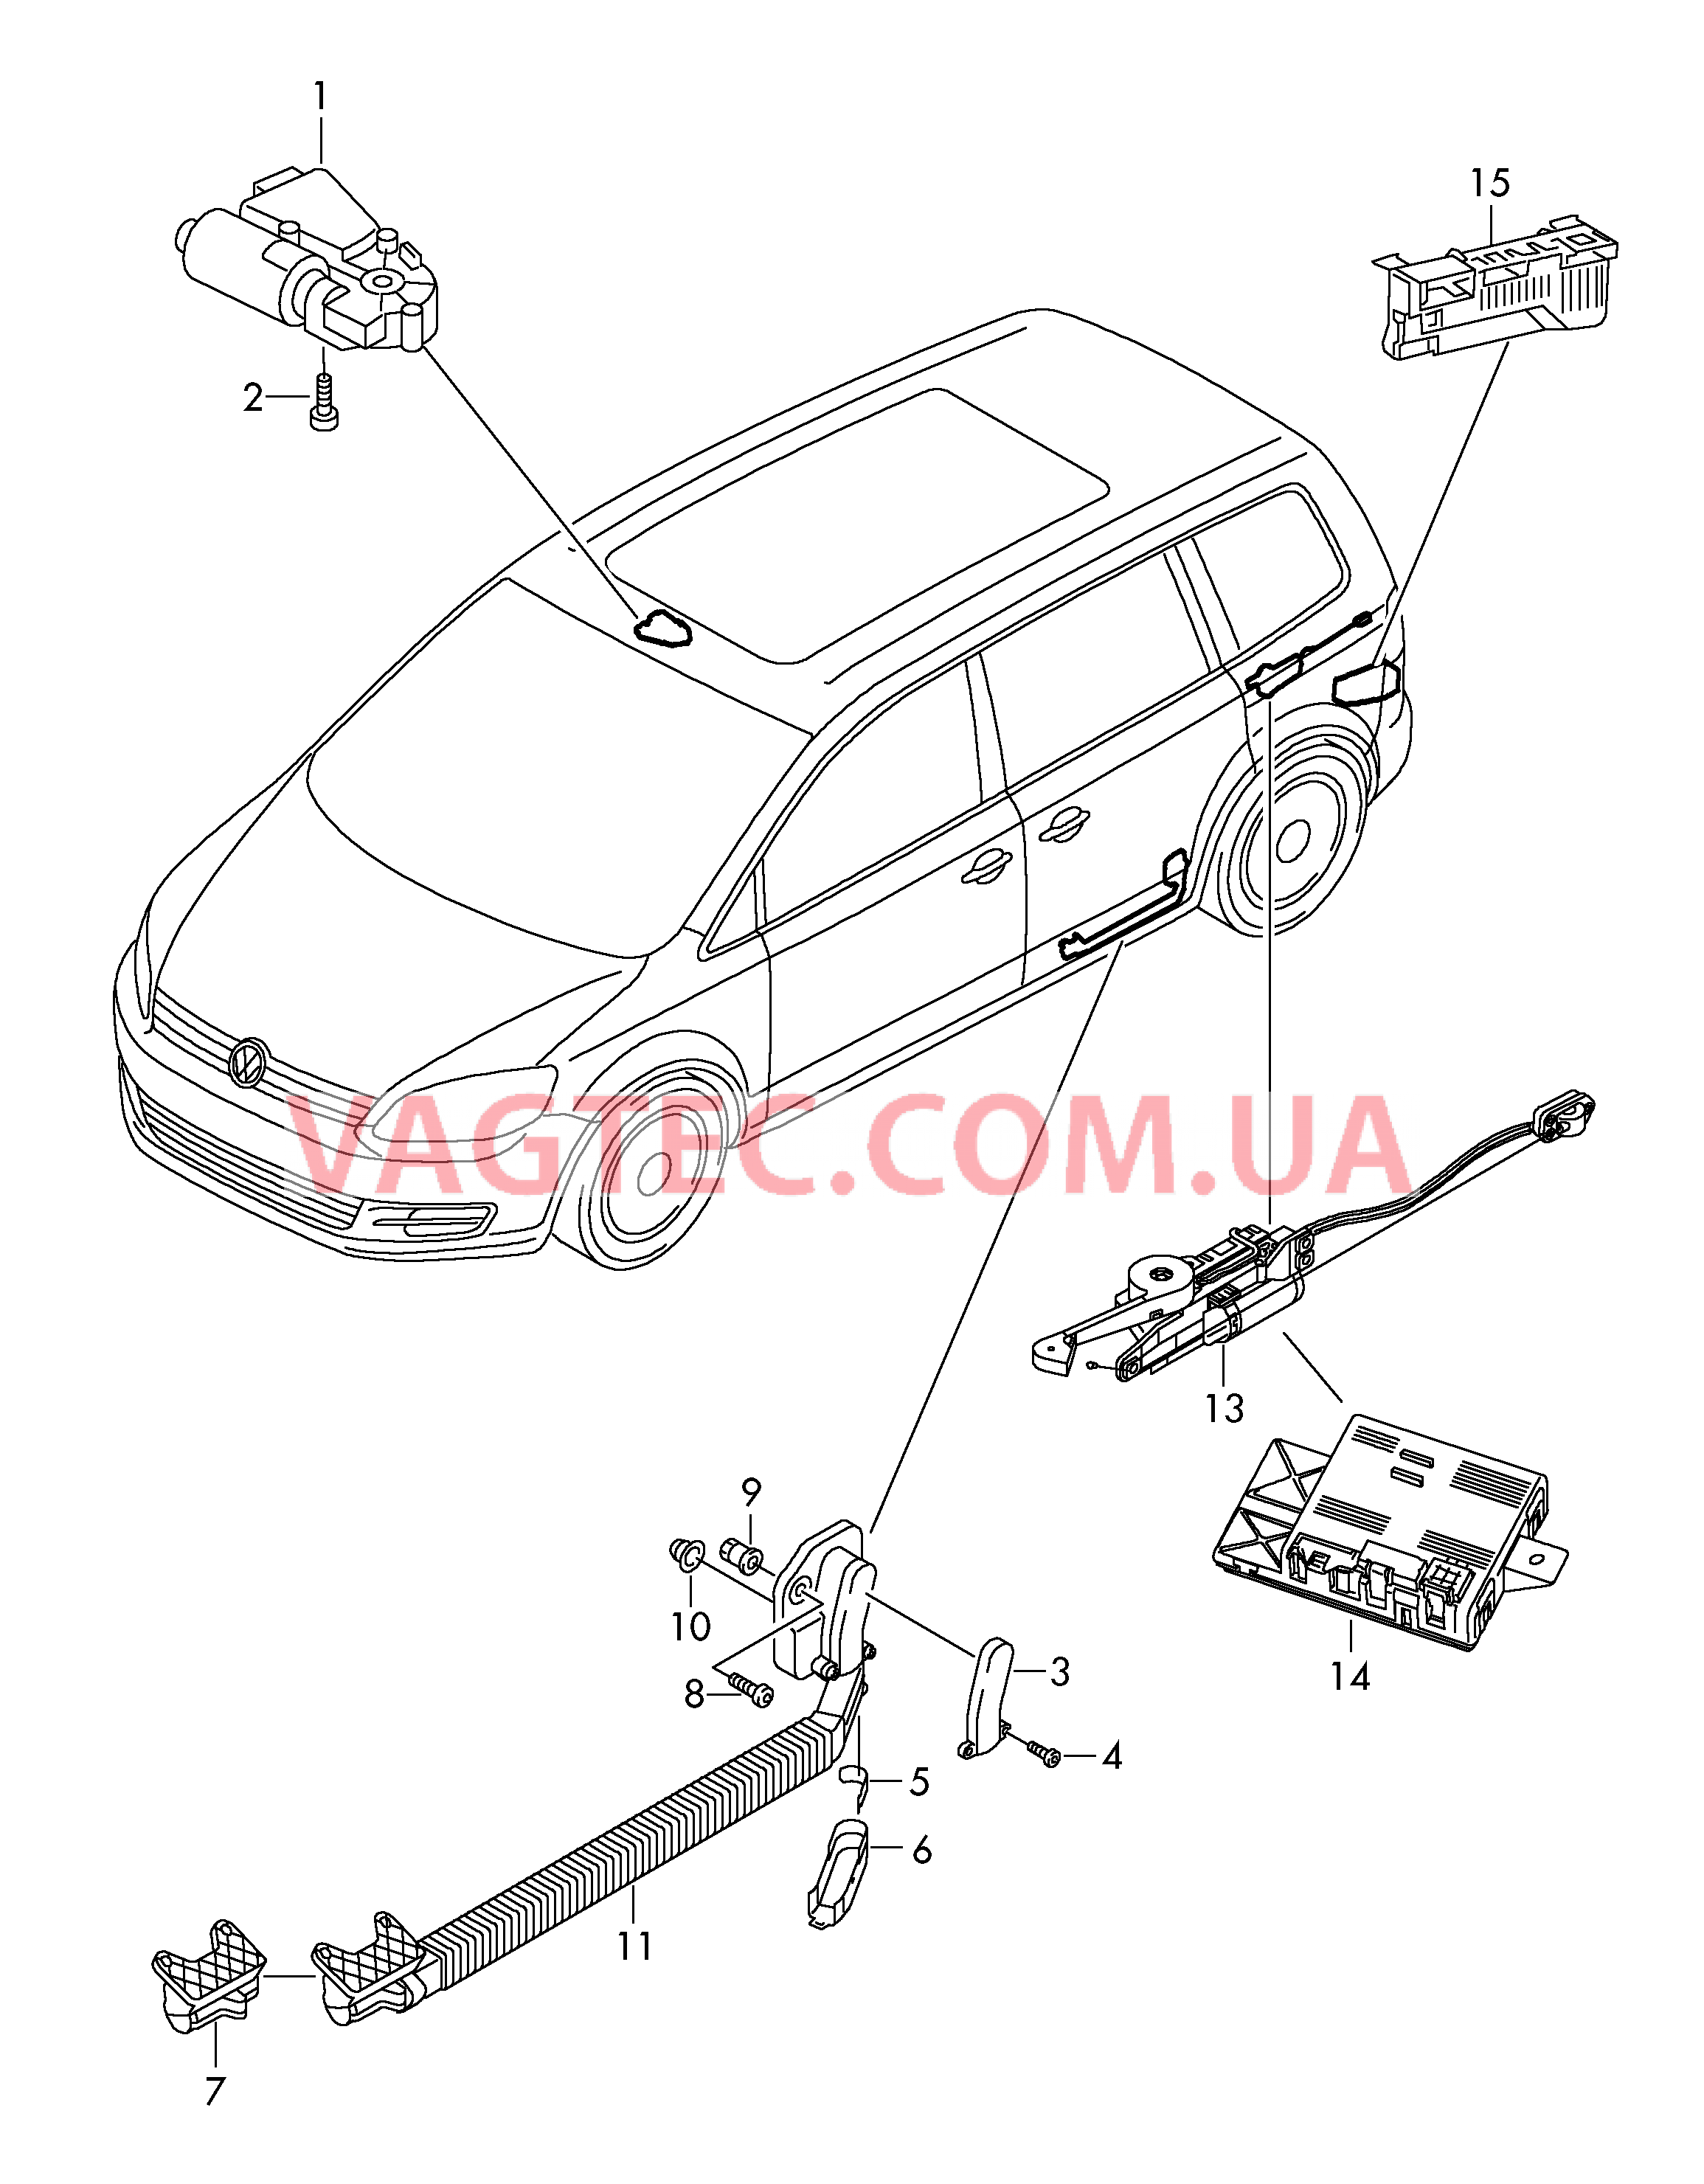 Мотор привода люка Электродетали для сдвижной двери  Блок управления доводчика  для SEAT Alhambra 2013